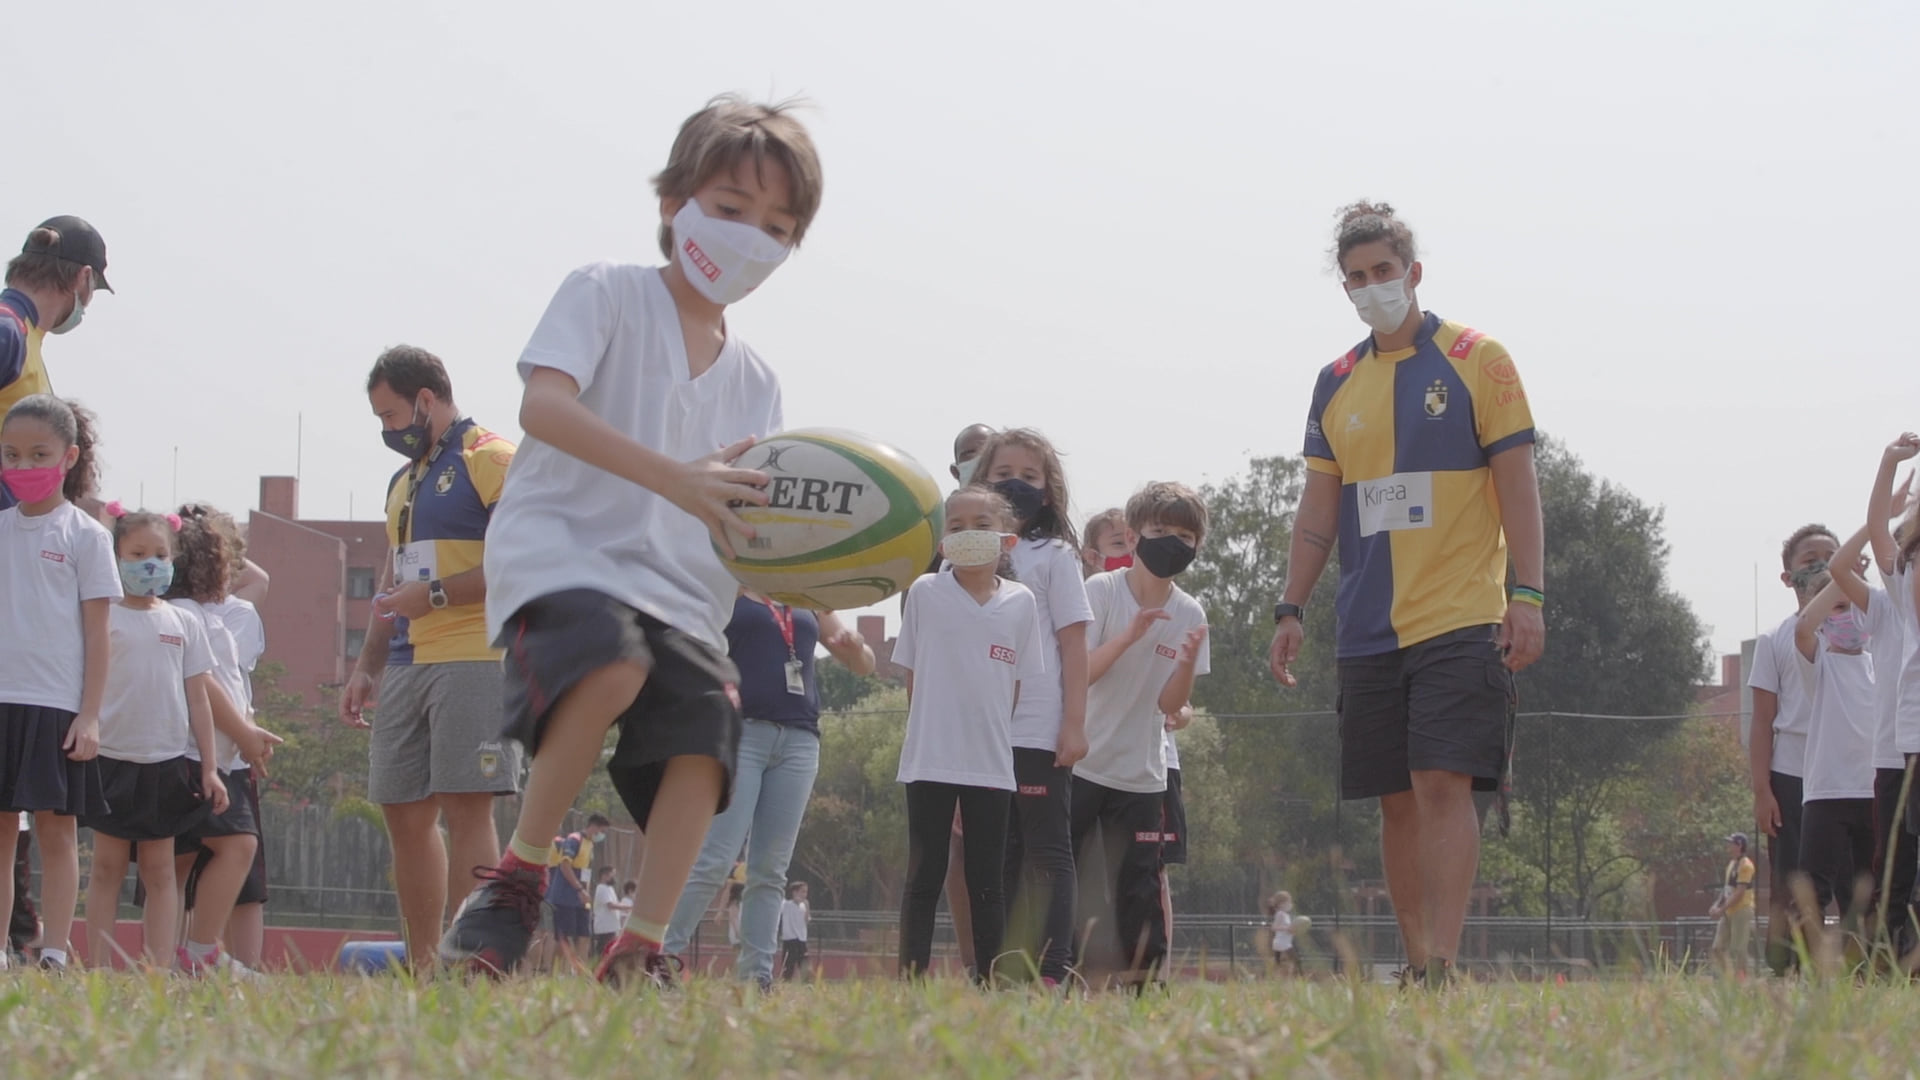 Sesi-SP e CBRu realizam Festival de Rugby em Osasco